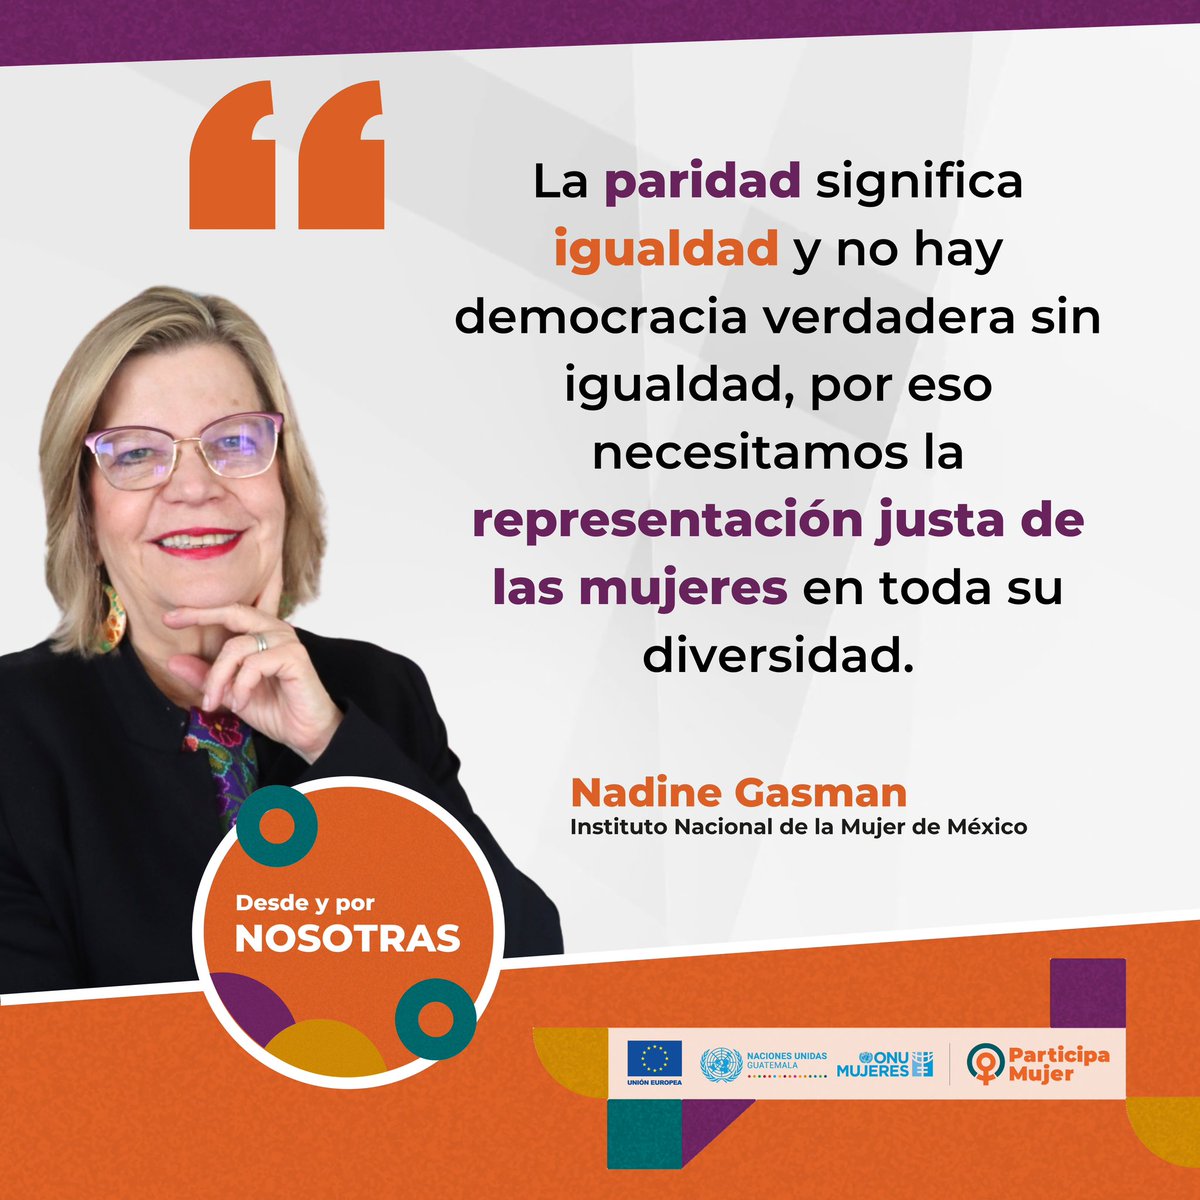 Palabras del Sra. Nadine Gasman @nadgasman Presidenta del Instituto Nacional de las Mujeres de México en el Seminario Internacional #DesdeYporNosotras del Proyecto #ParticipaMujer financiado por @UEGuatemala